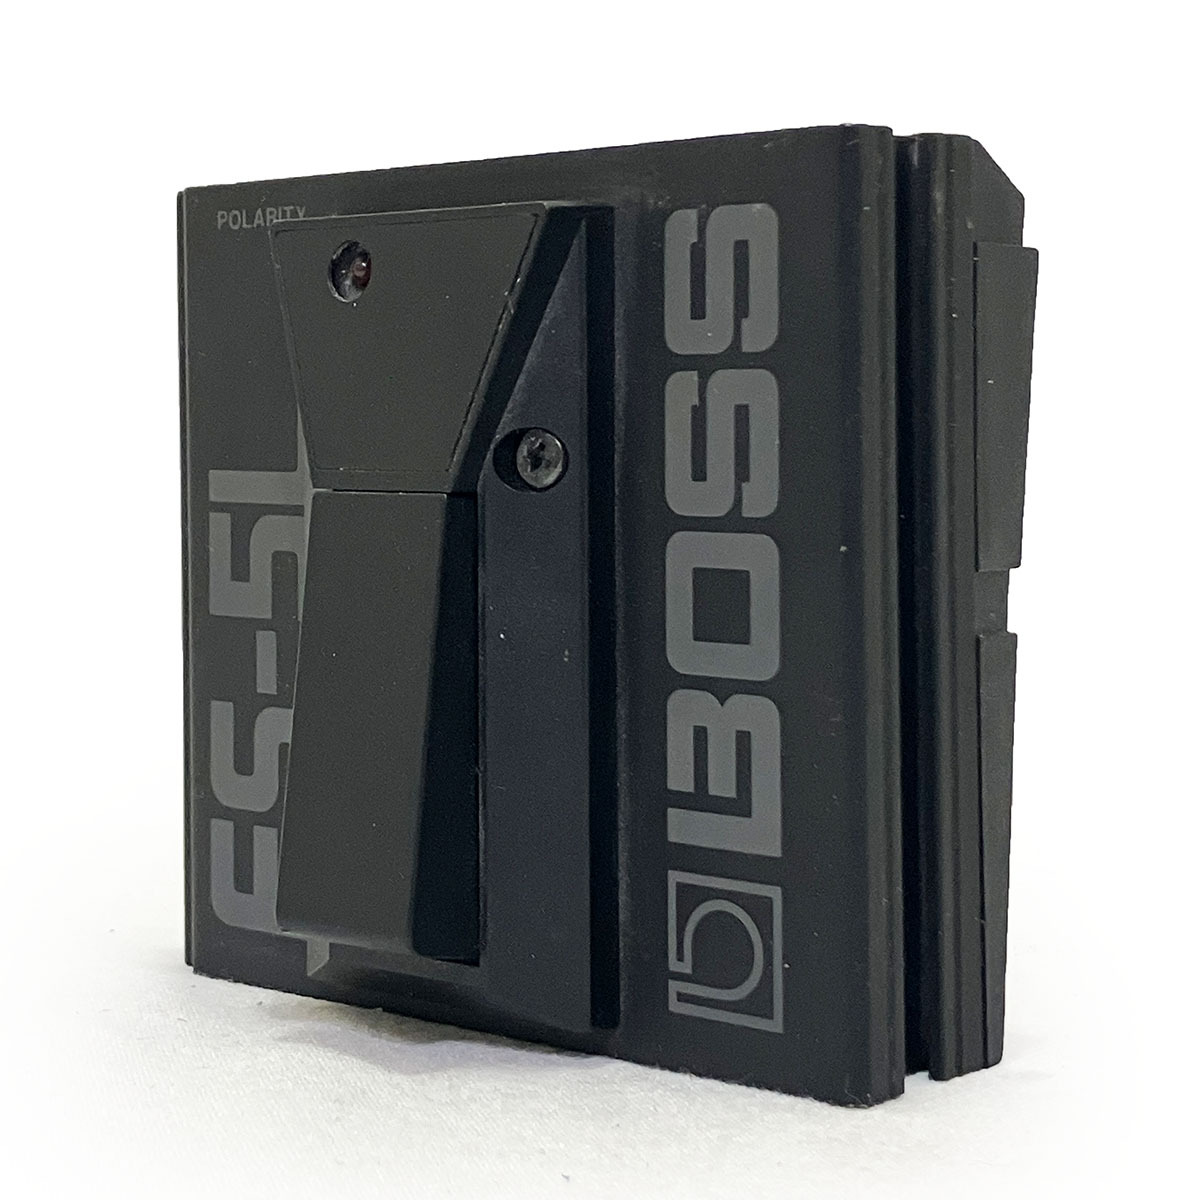 ボス ラッチ フットスイッチ BOSS FS-5L 完動品 正規品 本物 エフェクター ボード アンプ ポラリティ スイッチ 電池 駆動 連結 機材_画像1